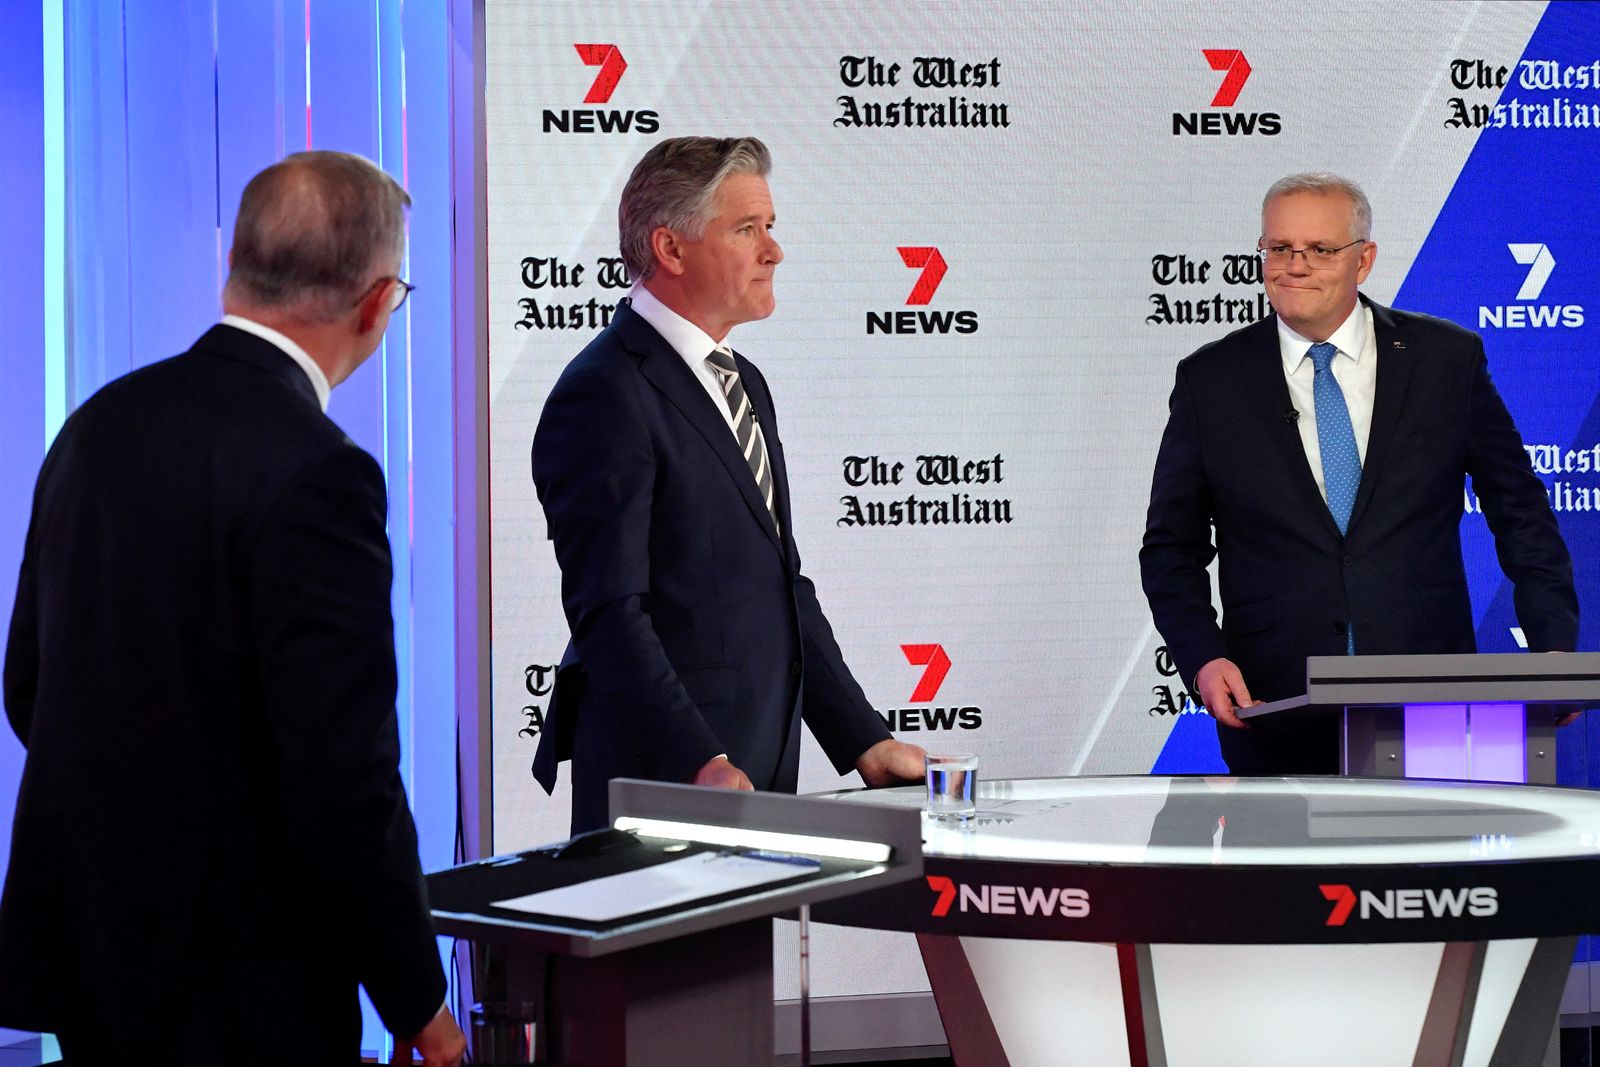 رئيس الوزراء الأسترالي سكوت موريسون وزعيم المعارضة أنتوني ألبانيزي، يحضران مناظرة القادة الثالثة في سيدني، 11 مايو 2022. - AFP